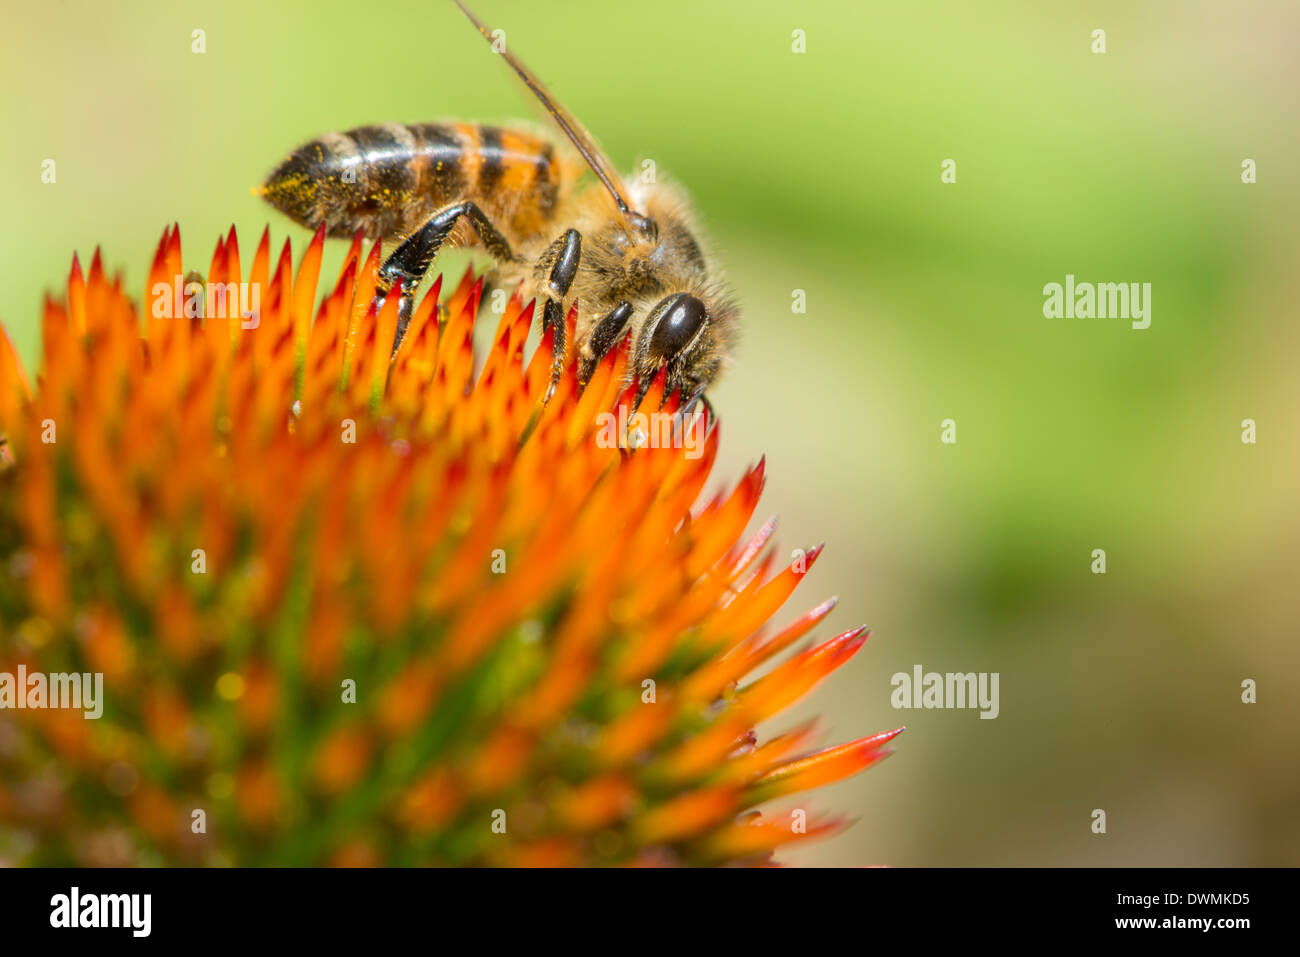 Abeille à miel (Apis mellifera) se nourrissant d'Echinacea sp. (Nectar), Angleterre, Royaume-Uni, Europe Banque D'Images